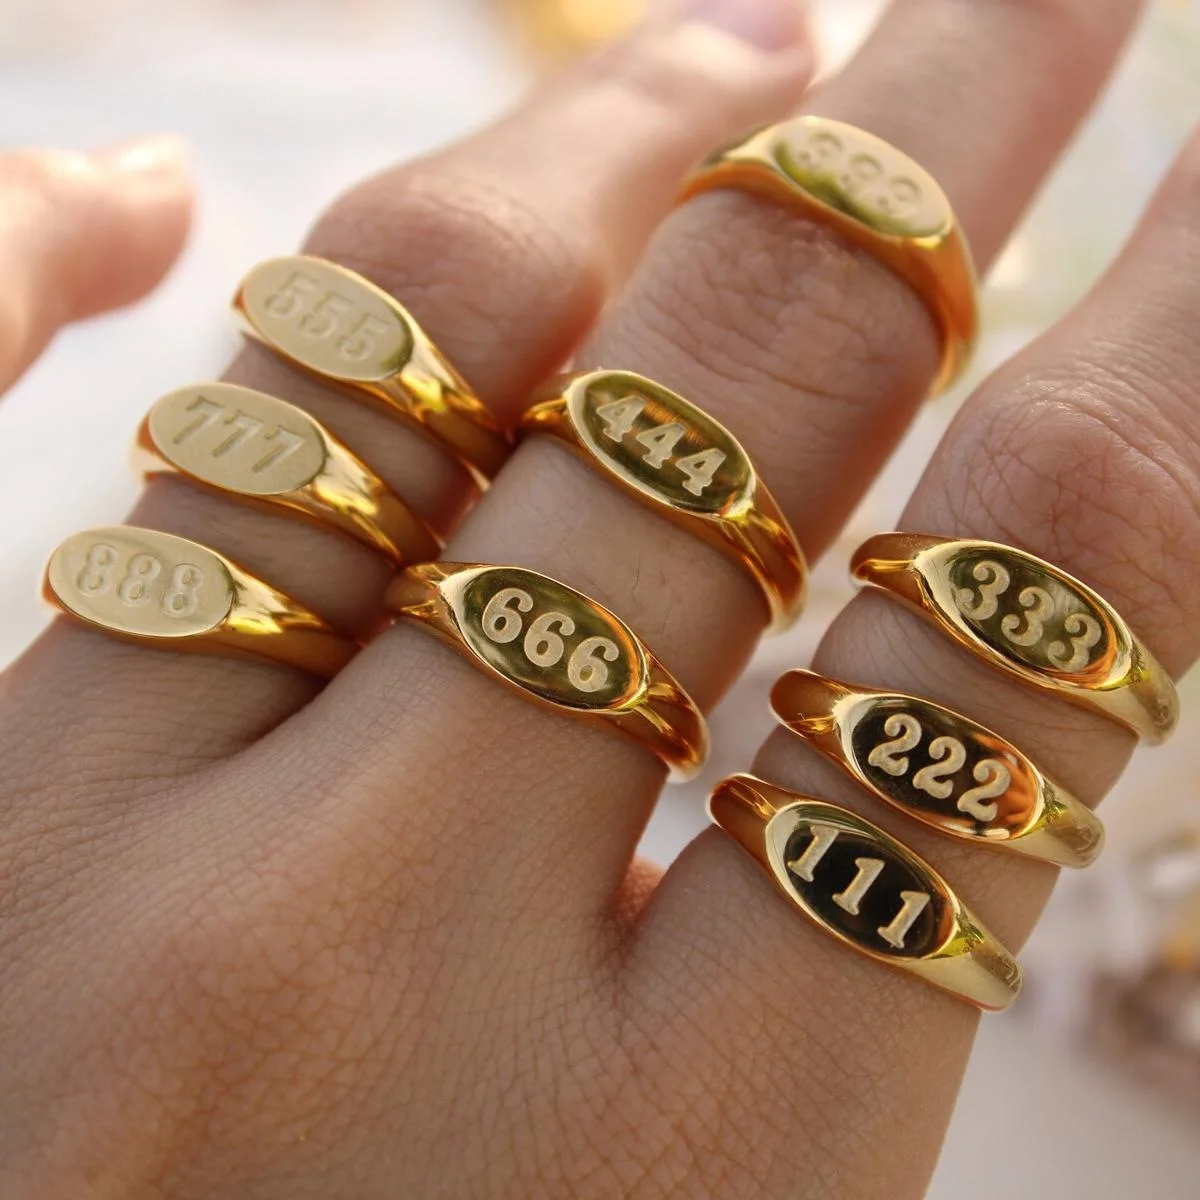 

Angel number ring 111-999 engraved numbers 18k gold stainless steel waterproof rings men women jewelry